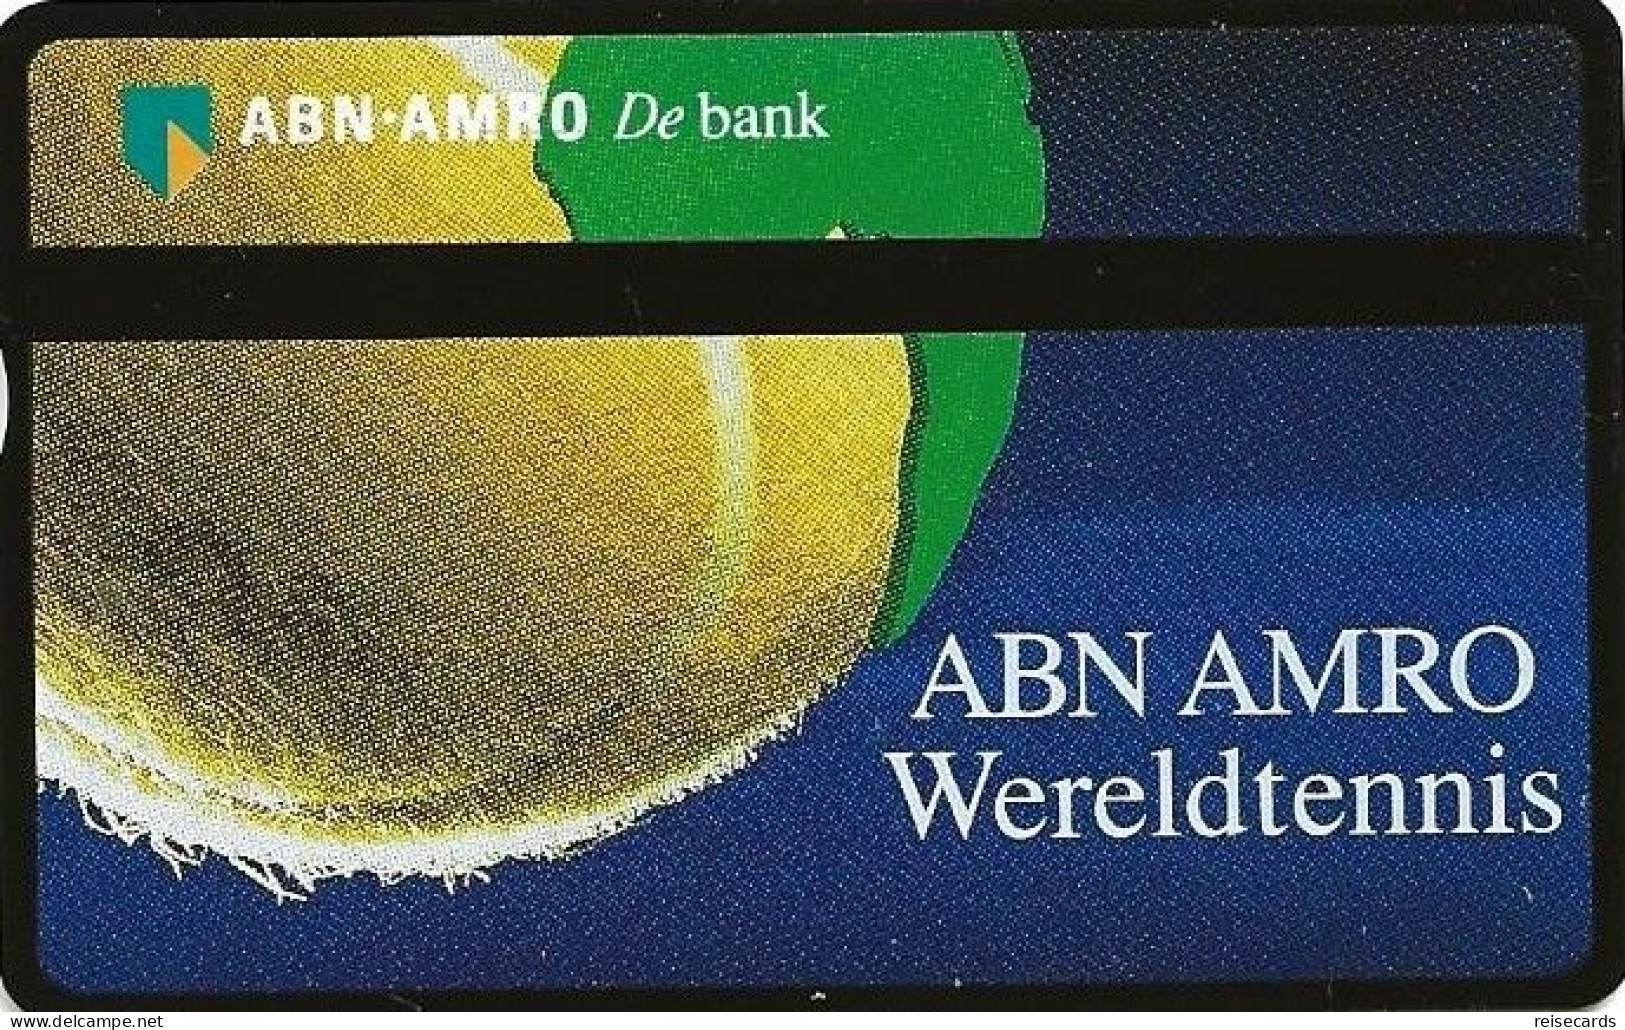 Netherlands: Ptt Telecom - 1992 248E ABN AMRO Wereldtennis. Mint - Private